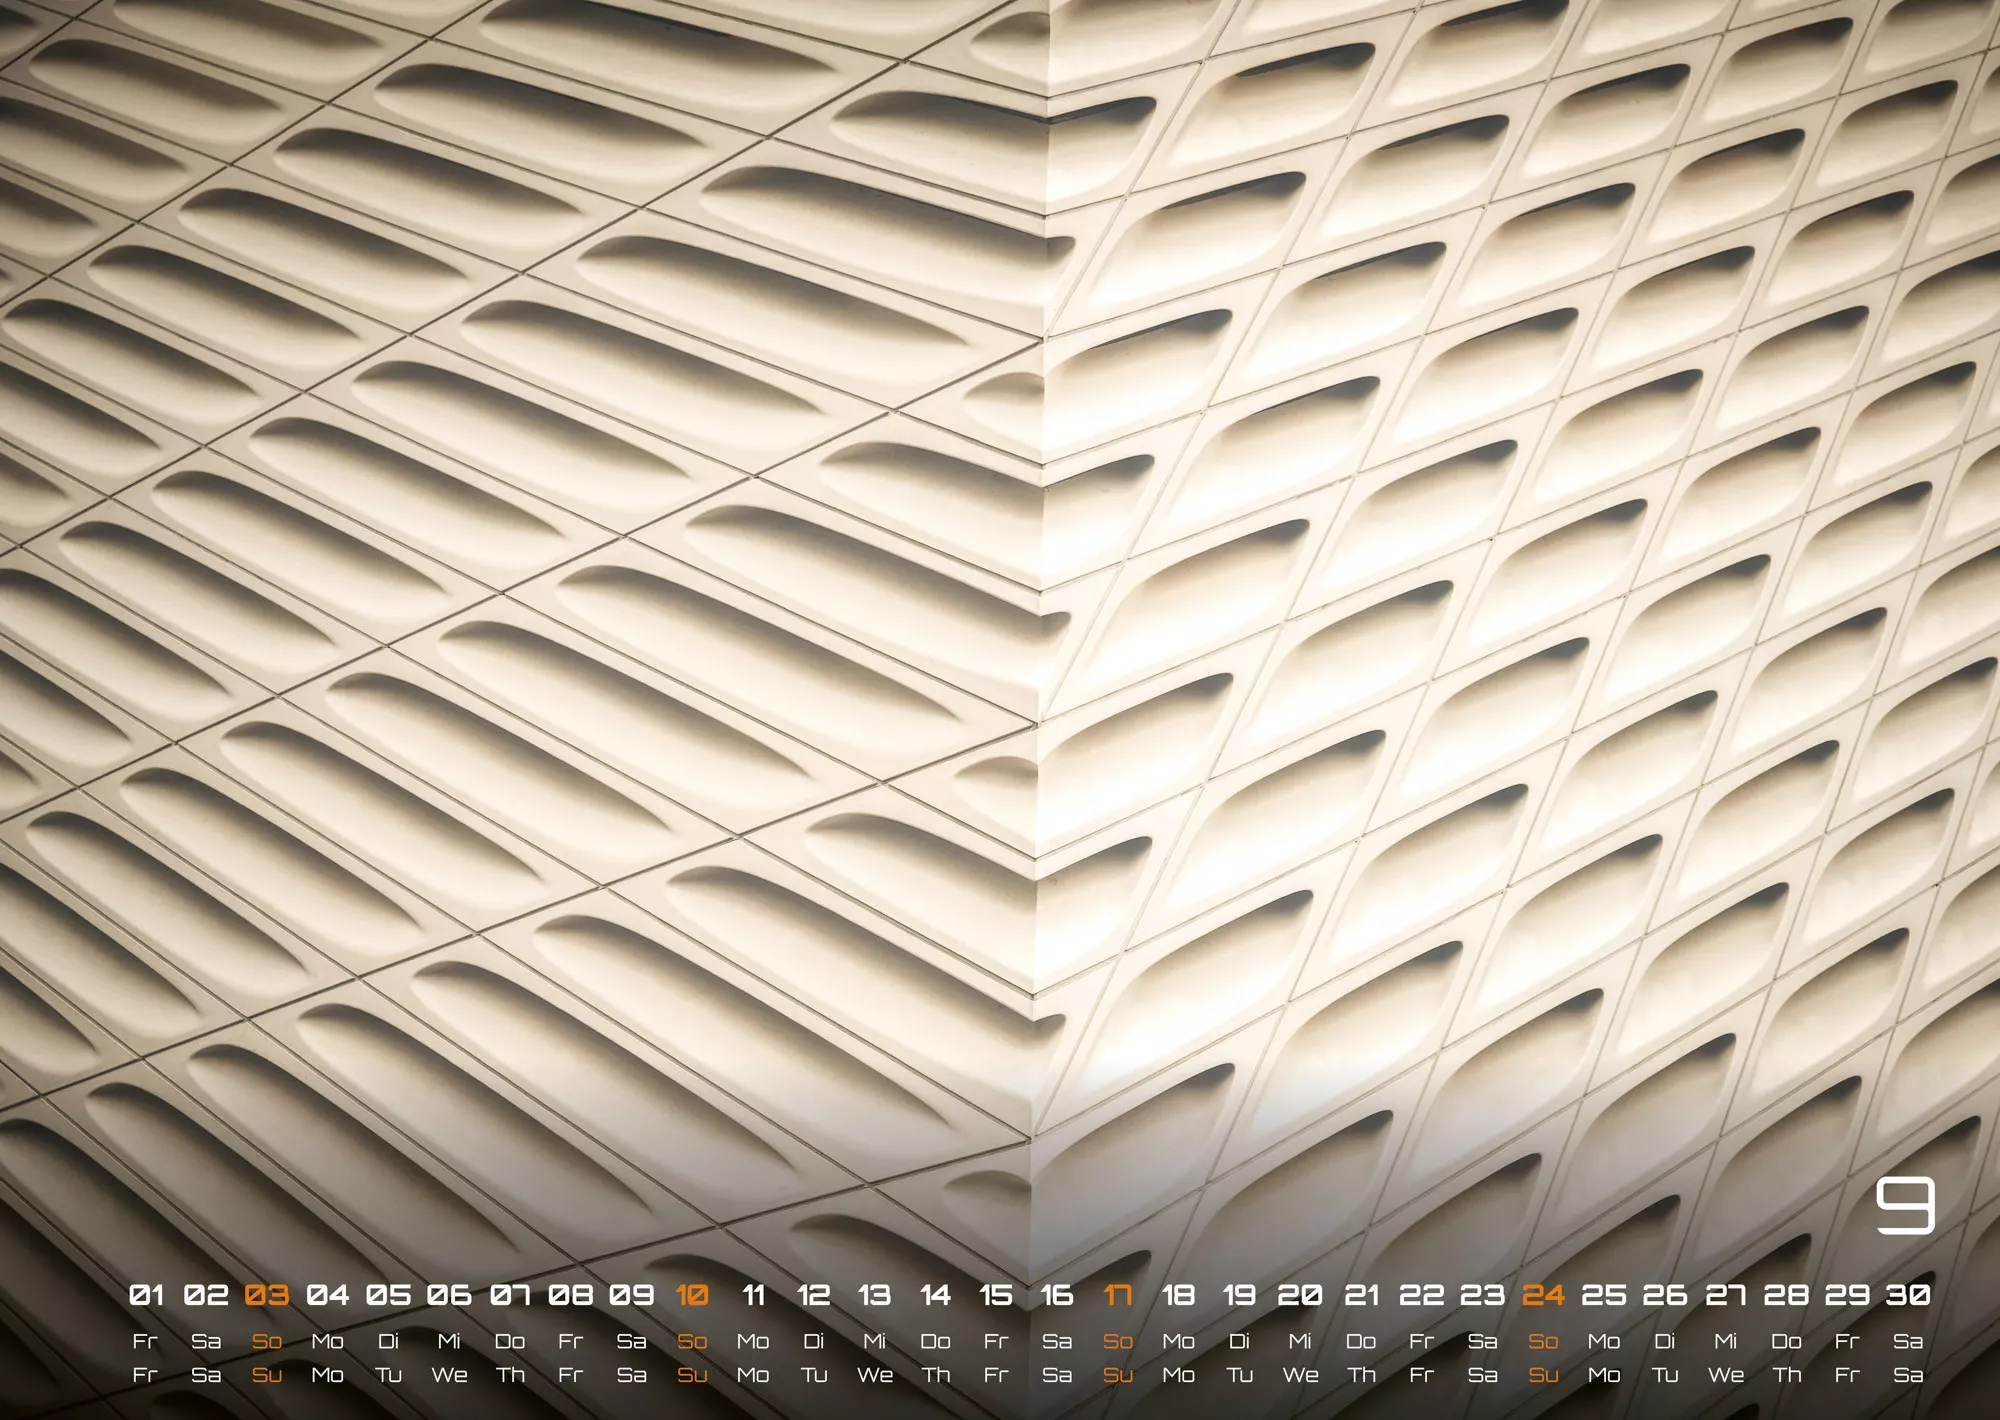 Architektur - faszinierende Baukunst - 2023 - Kalender